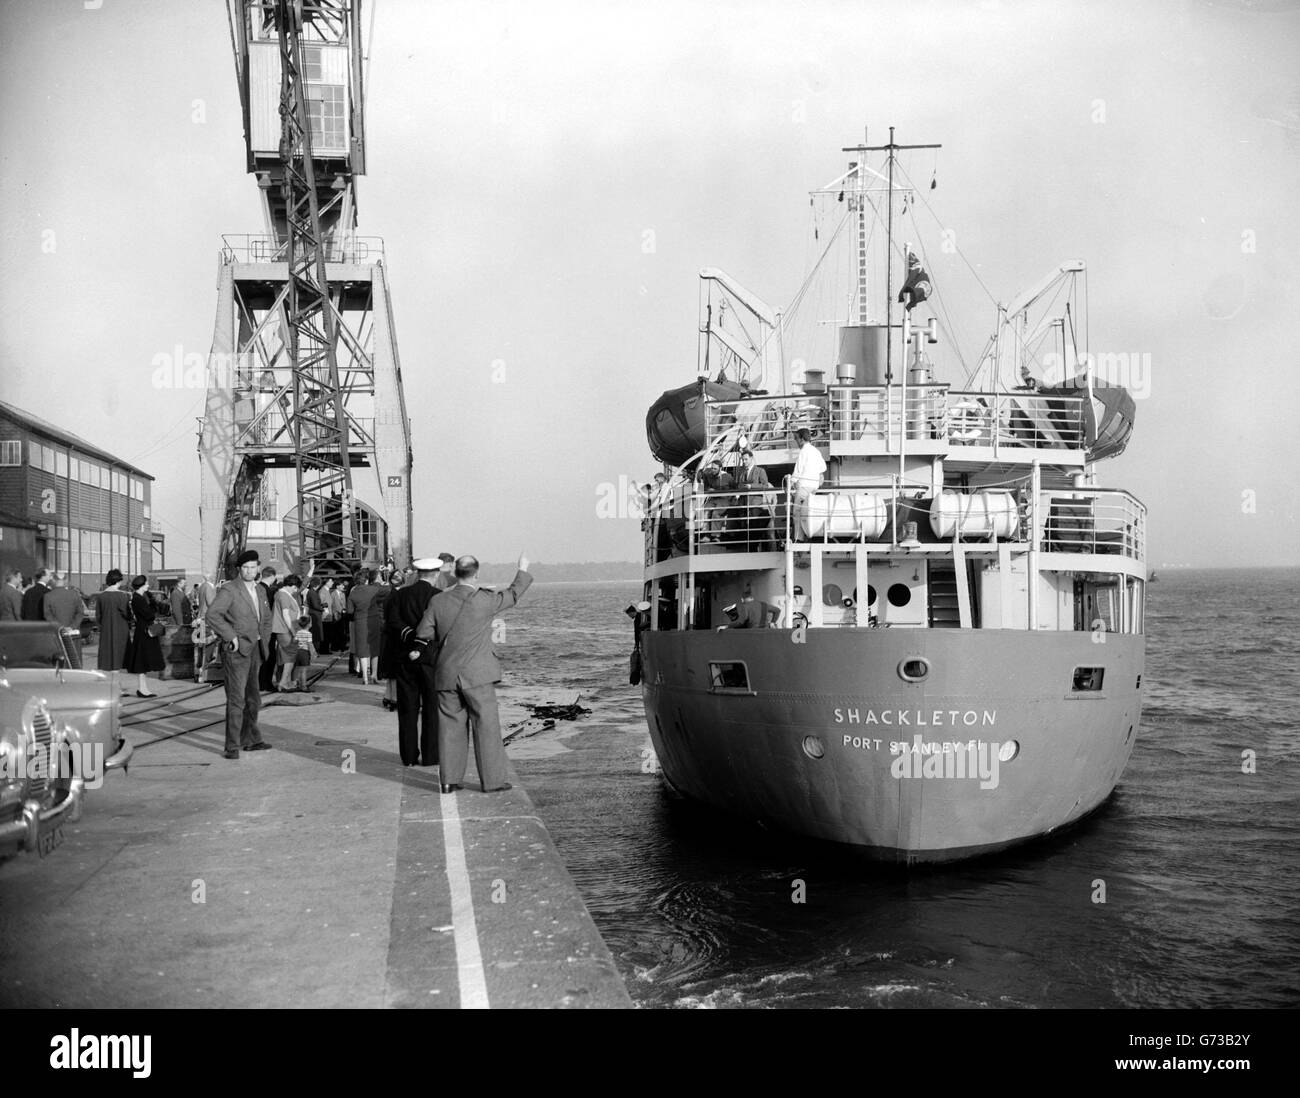 Lo Shackleton lascia per l'Anatartico. La nave di ricerca reale The Shackleton lascia Southampton per il suo viaggio di soccorso annuale in Antartico, con personale e forniture per il Falkland Islands Dependencies Survey. Foto Stock